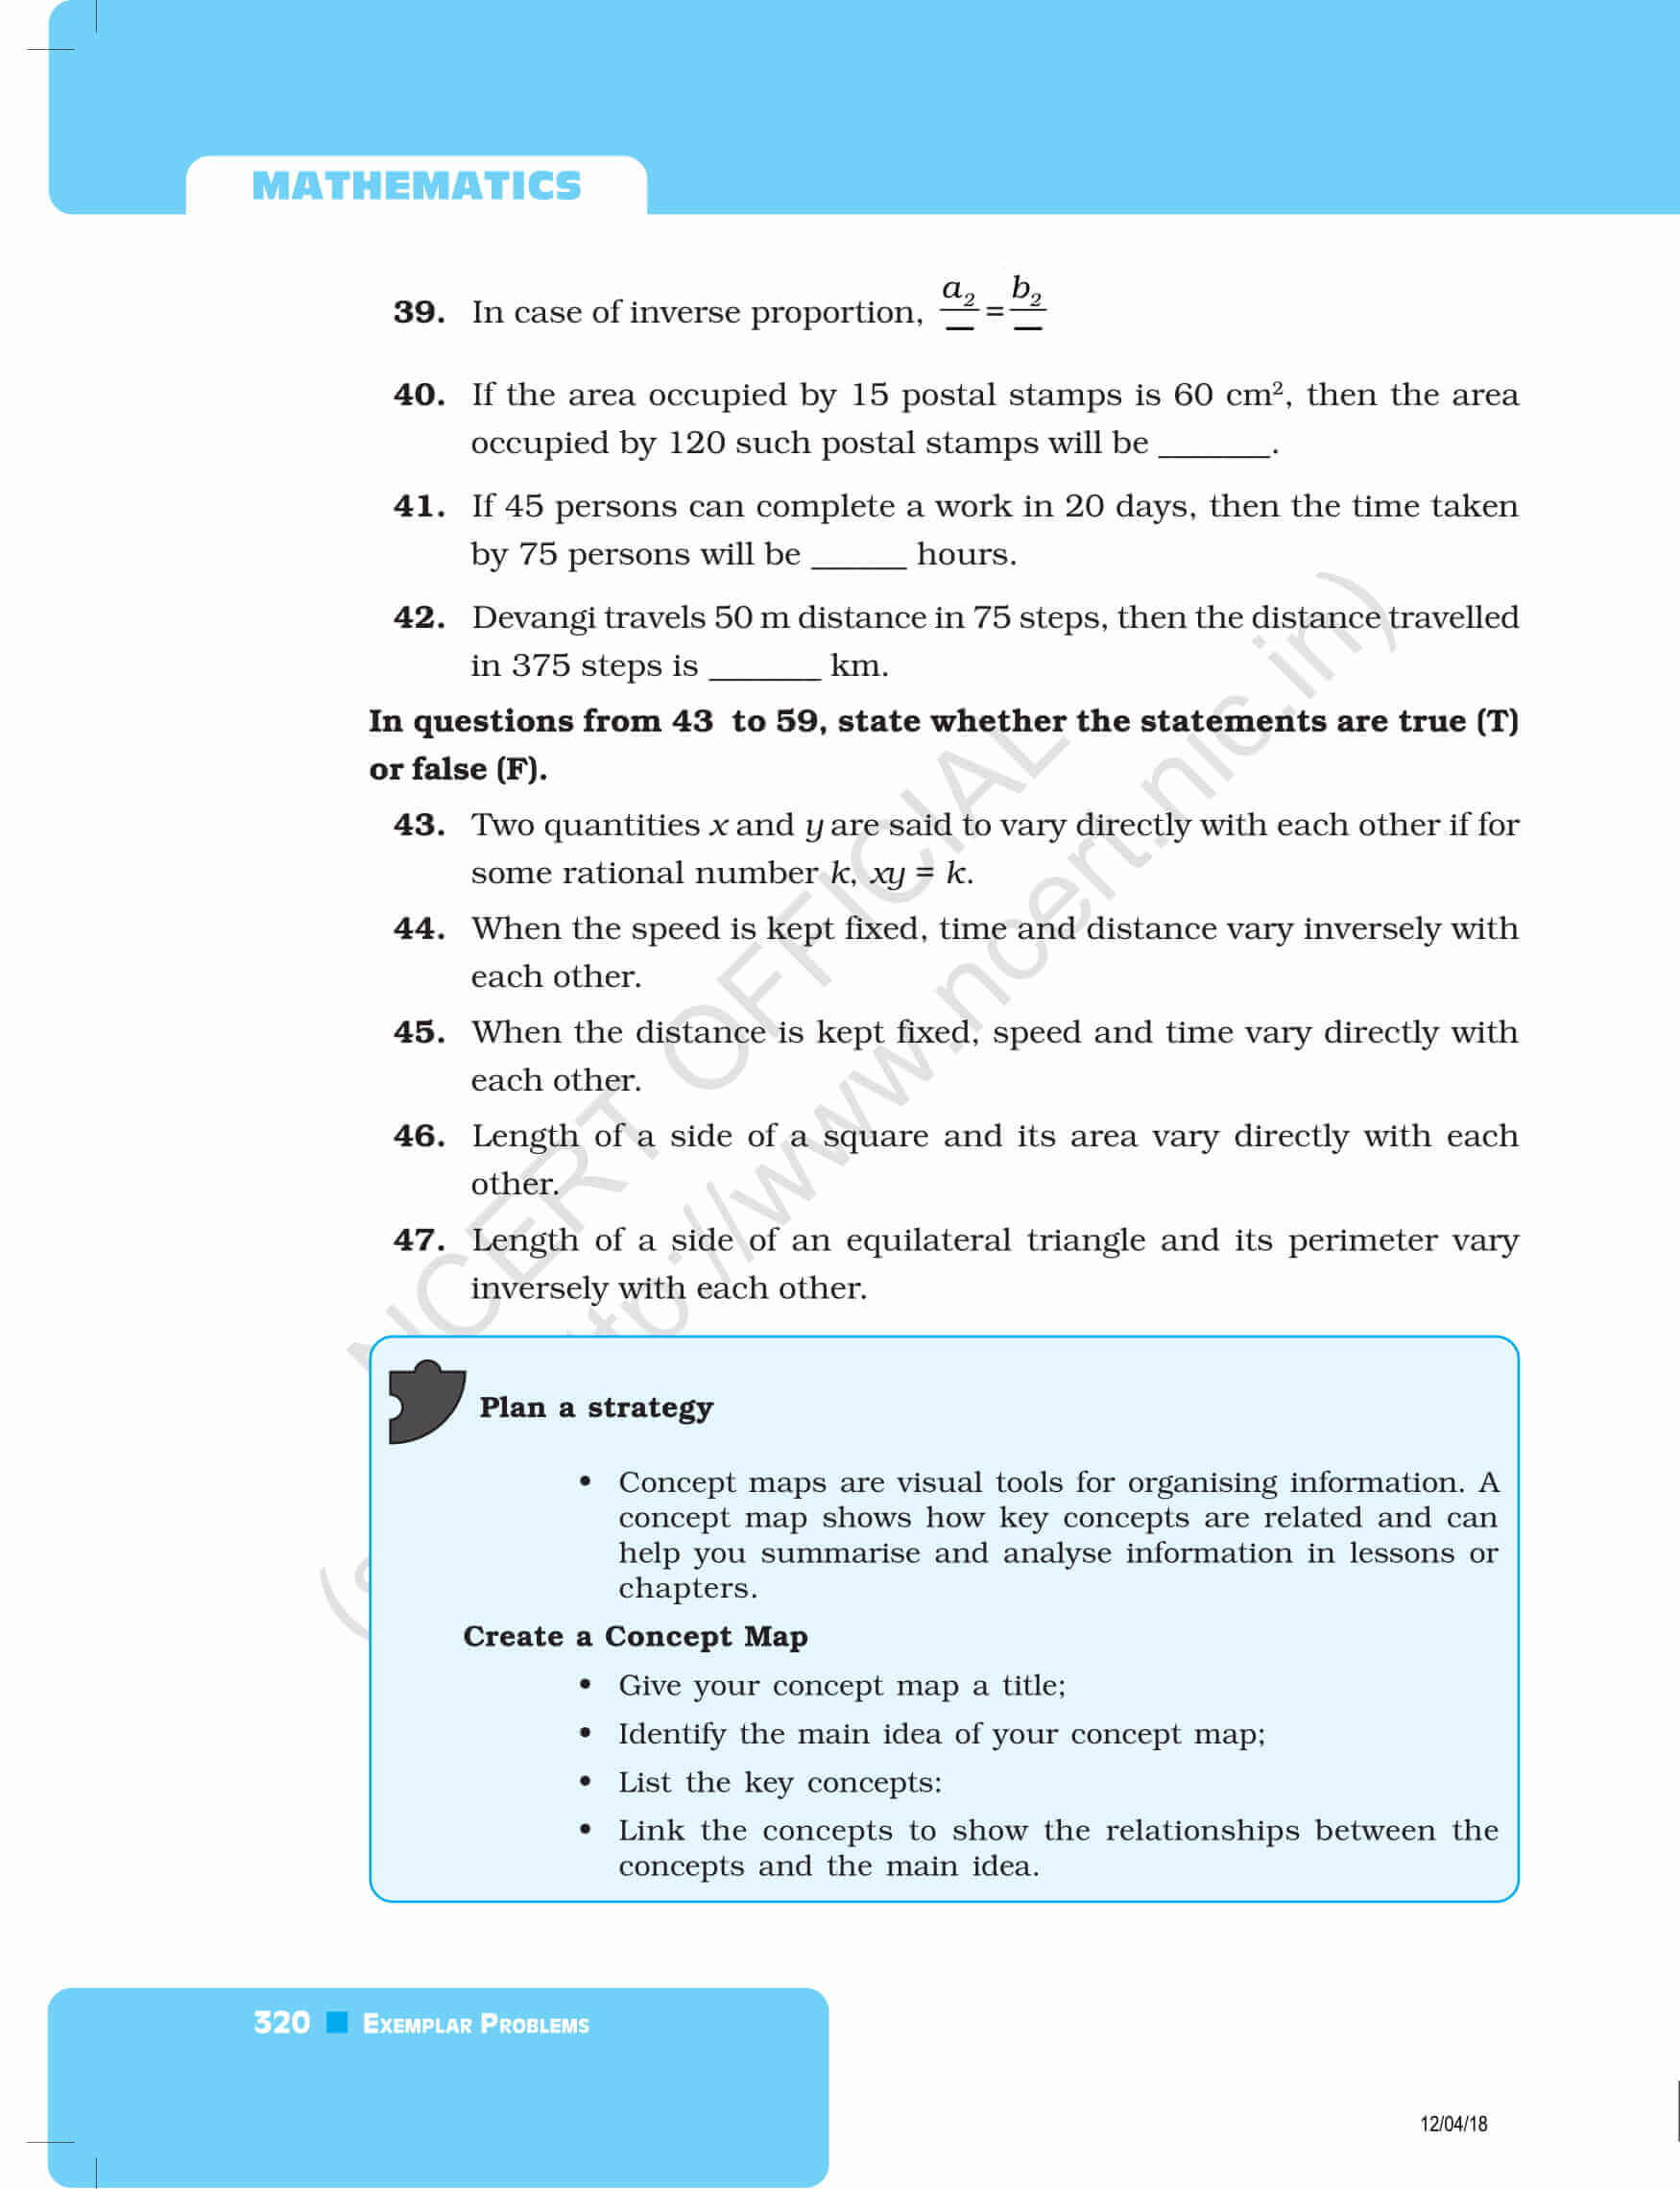 8th std textbook pdf